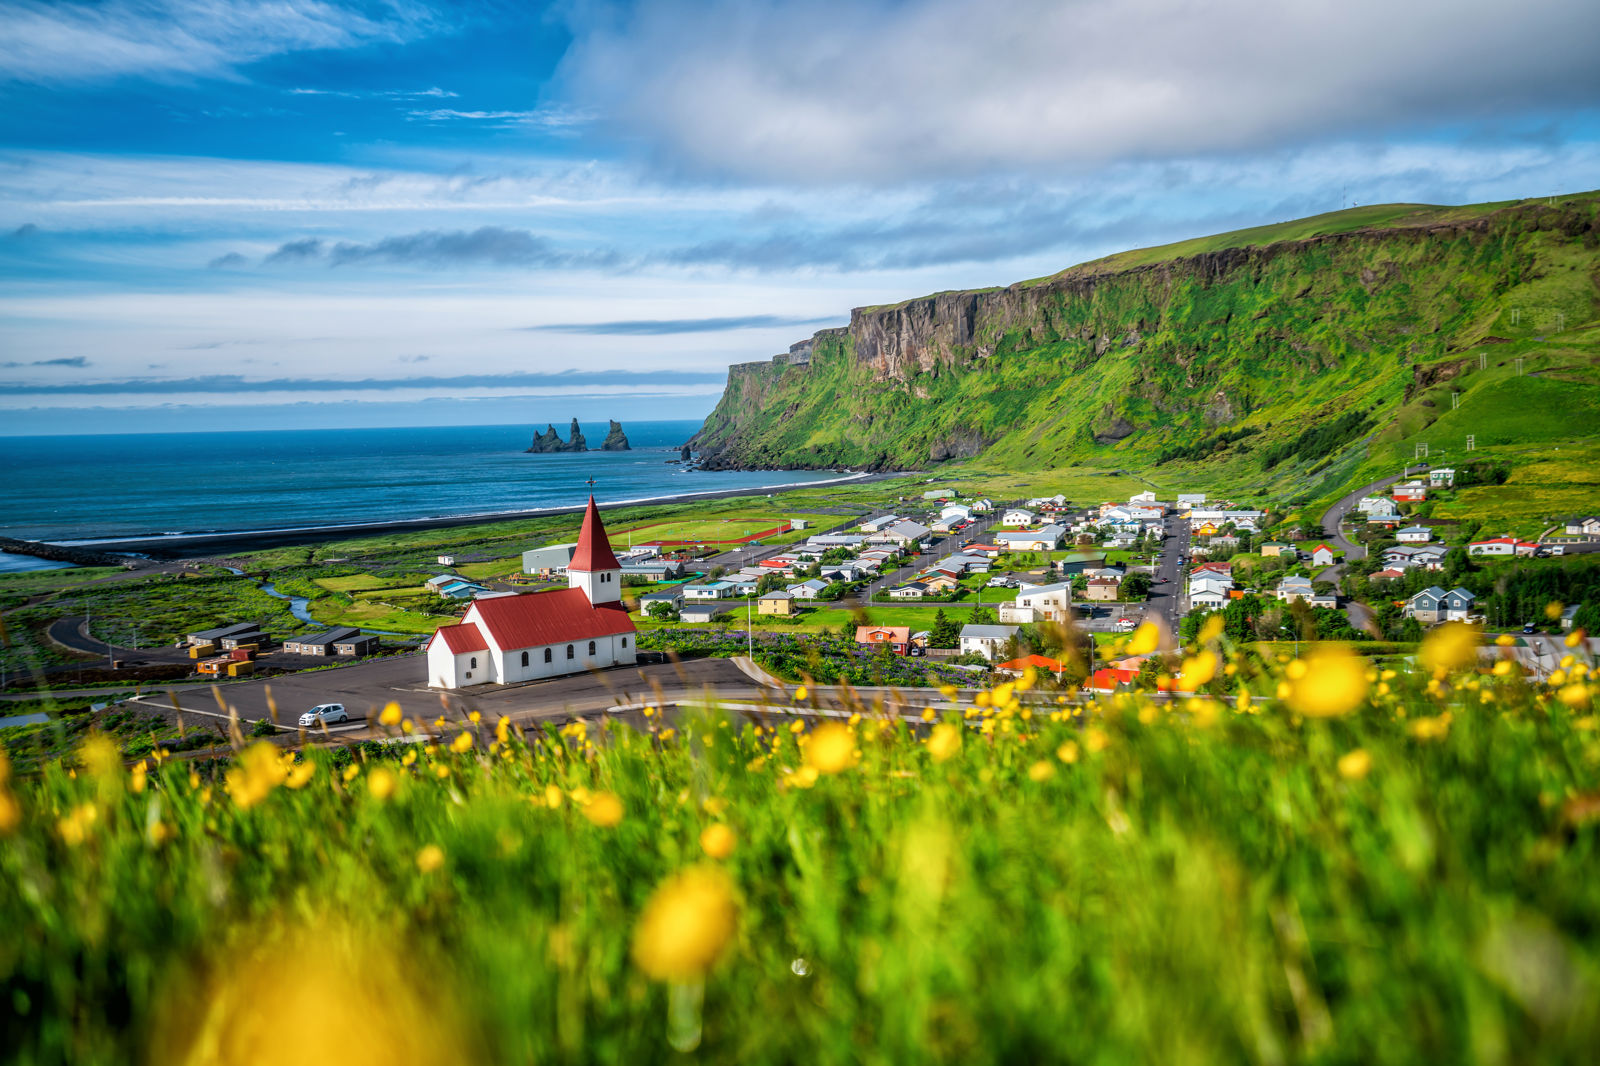 Cruise IJsland&Schotland incl. busreis